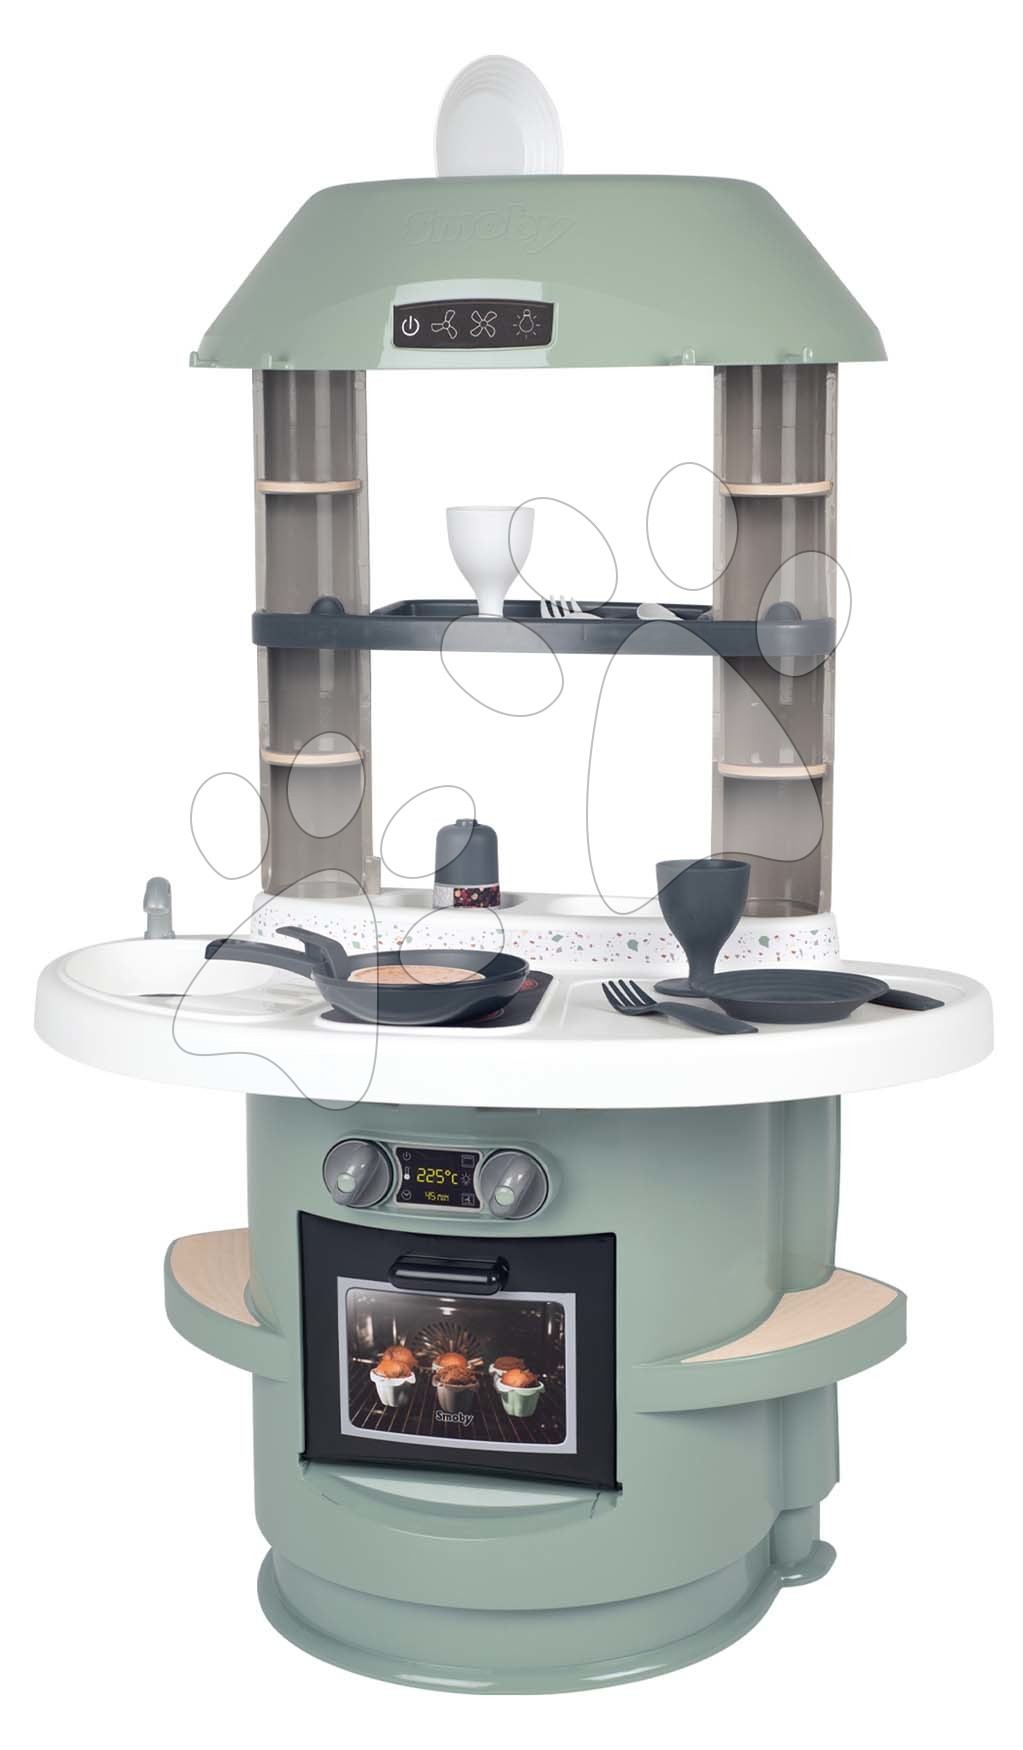 Obyčejné kuchyňky - Kuchyňka s mechanickým zvukem Nova Kitchen Smoby v minimalistickém designu s 13 doplňky výška 78 cm